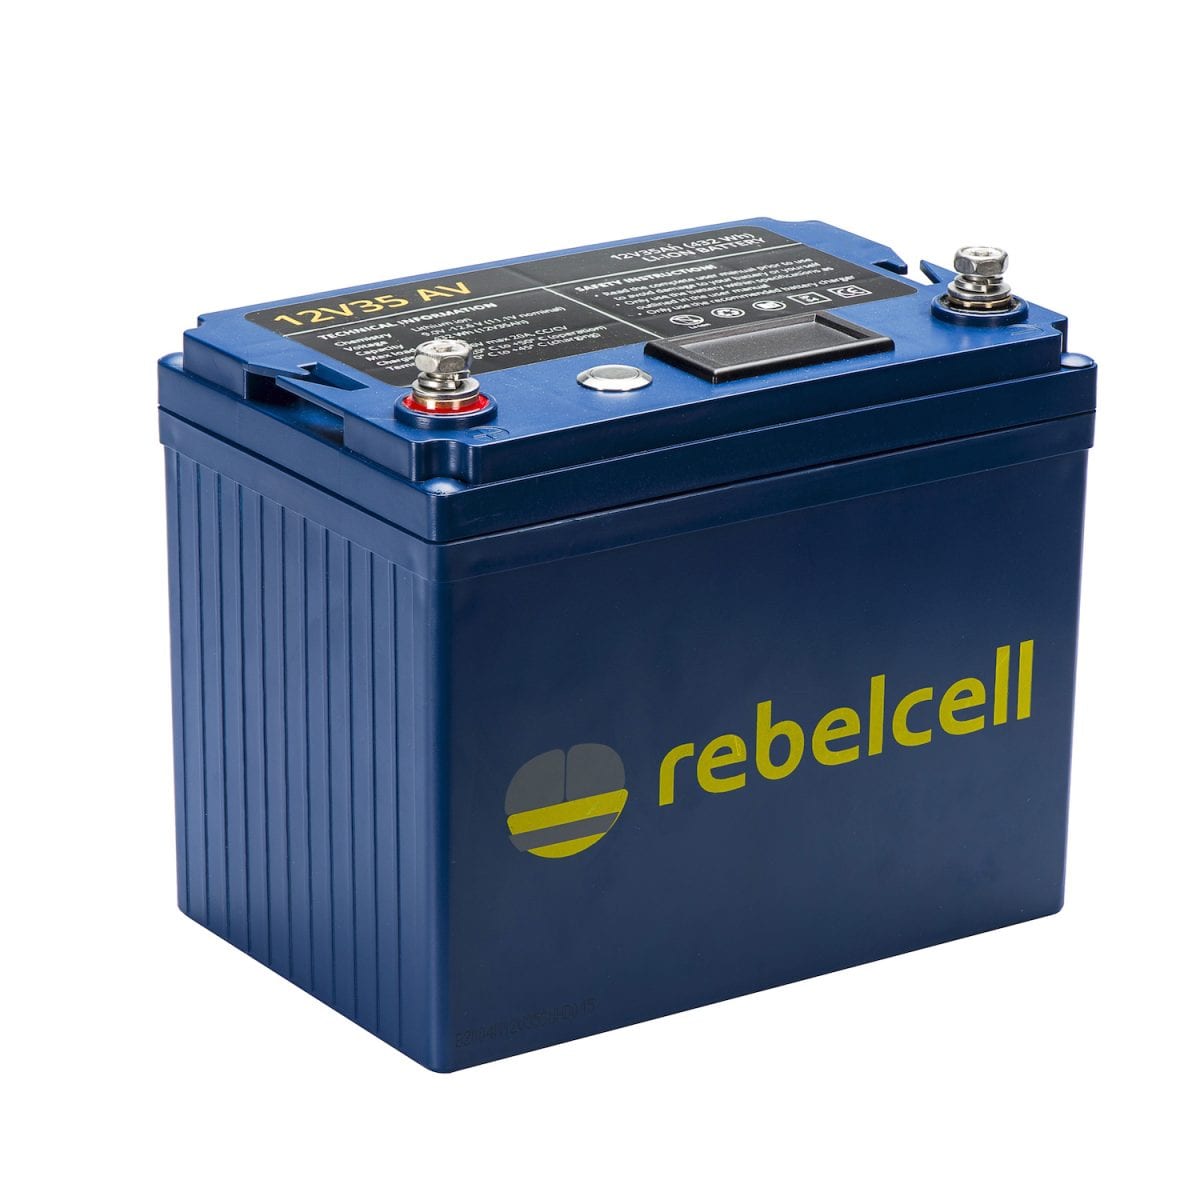 Rebelcel 12V35 AV product image